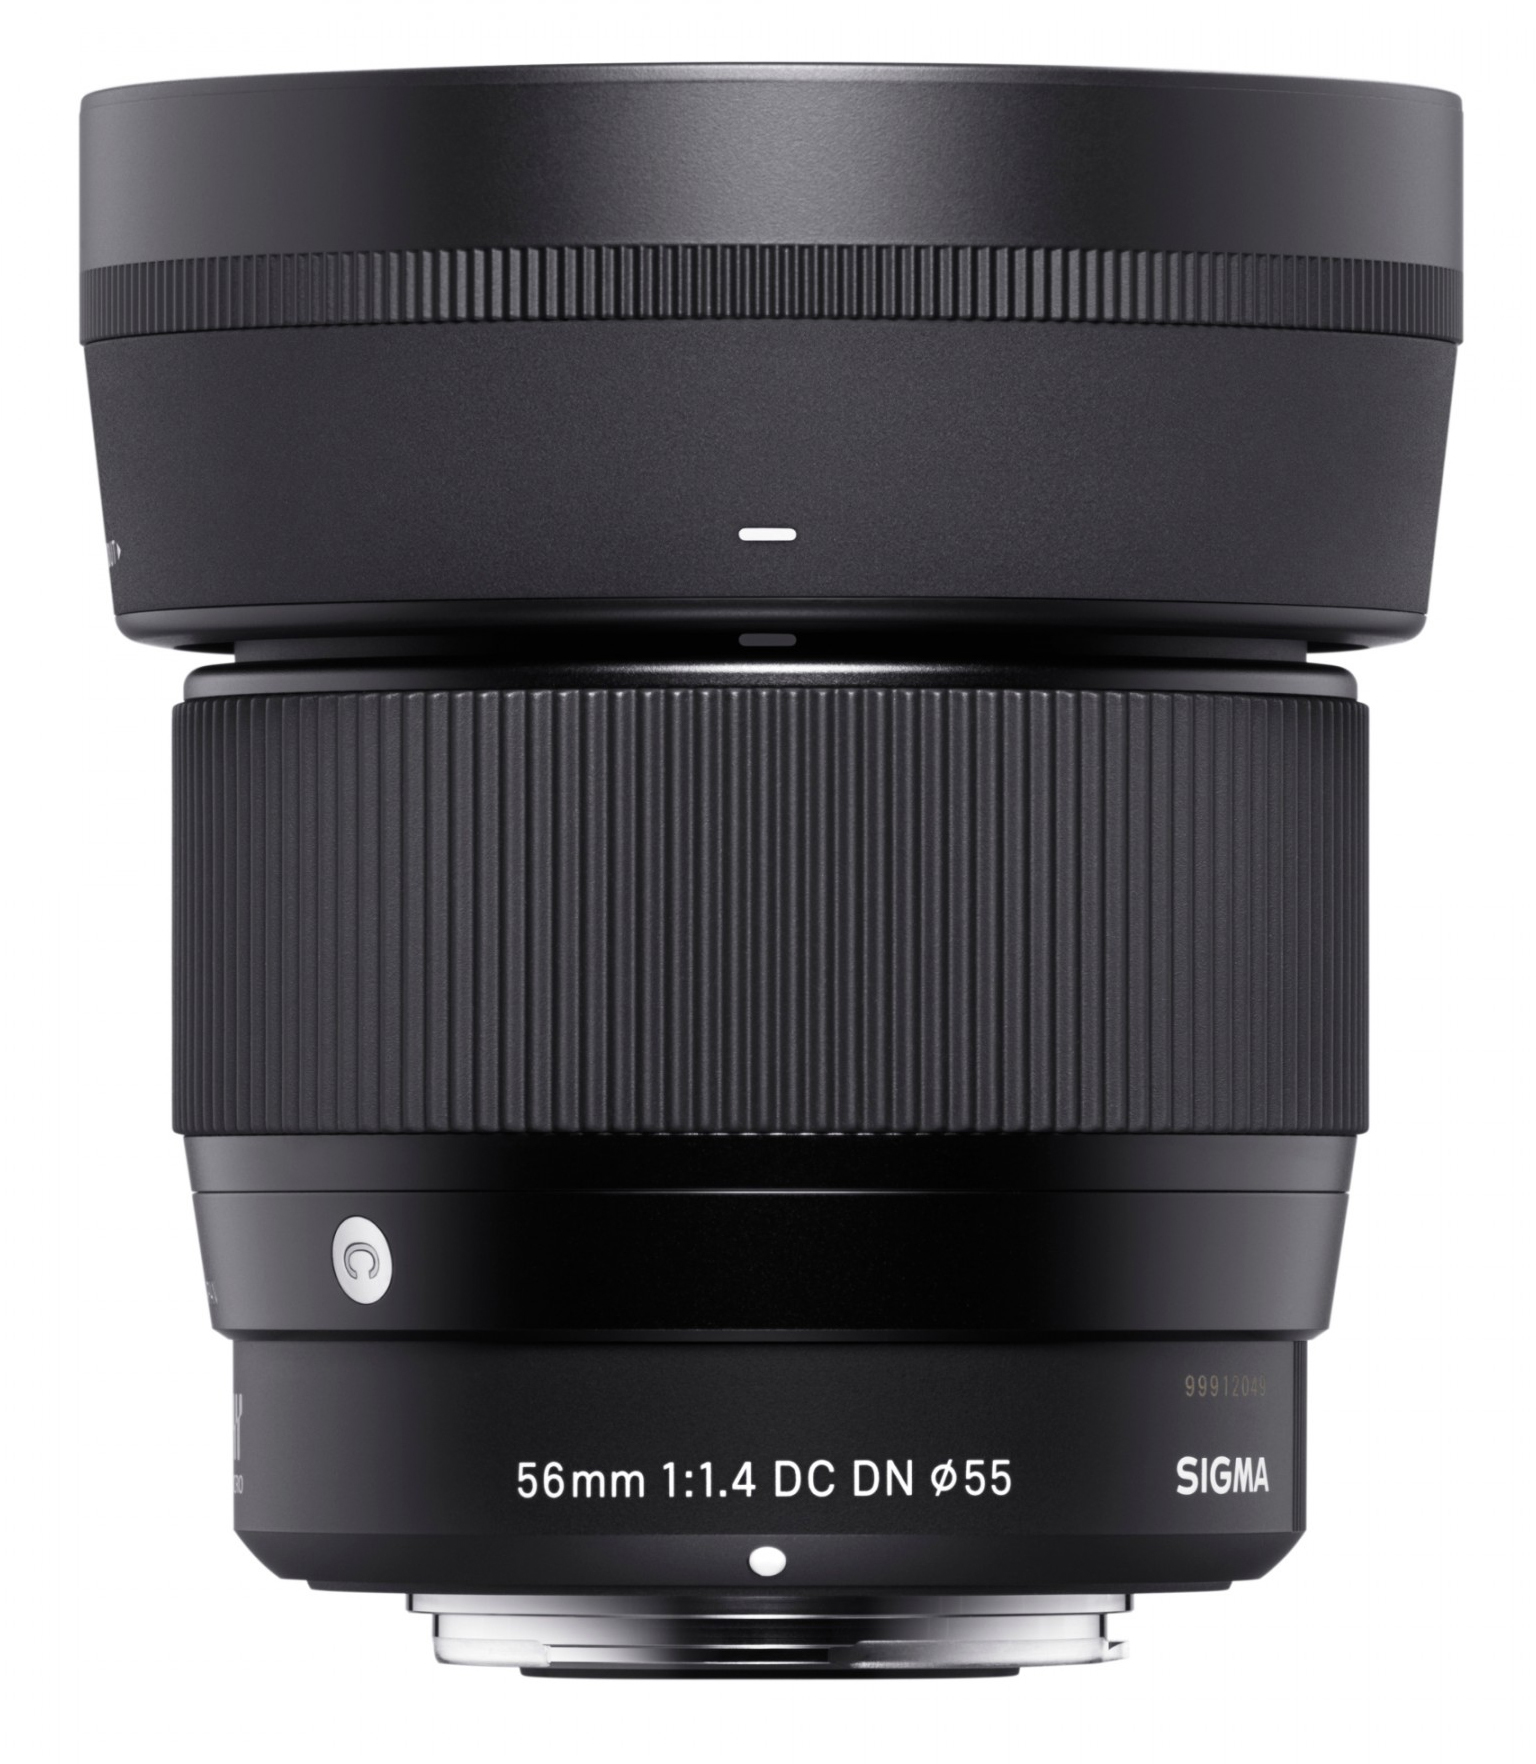 Sigma af 30mm. Sigma 30mm f1.4 DC DN. Sigma 30mm Art Canon. Sigma 56mm f/1.4. Sigma 56mm f/1.4 DC DN.